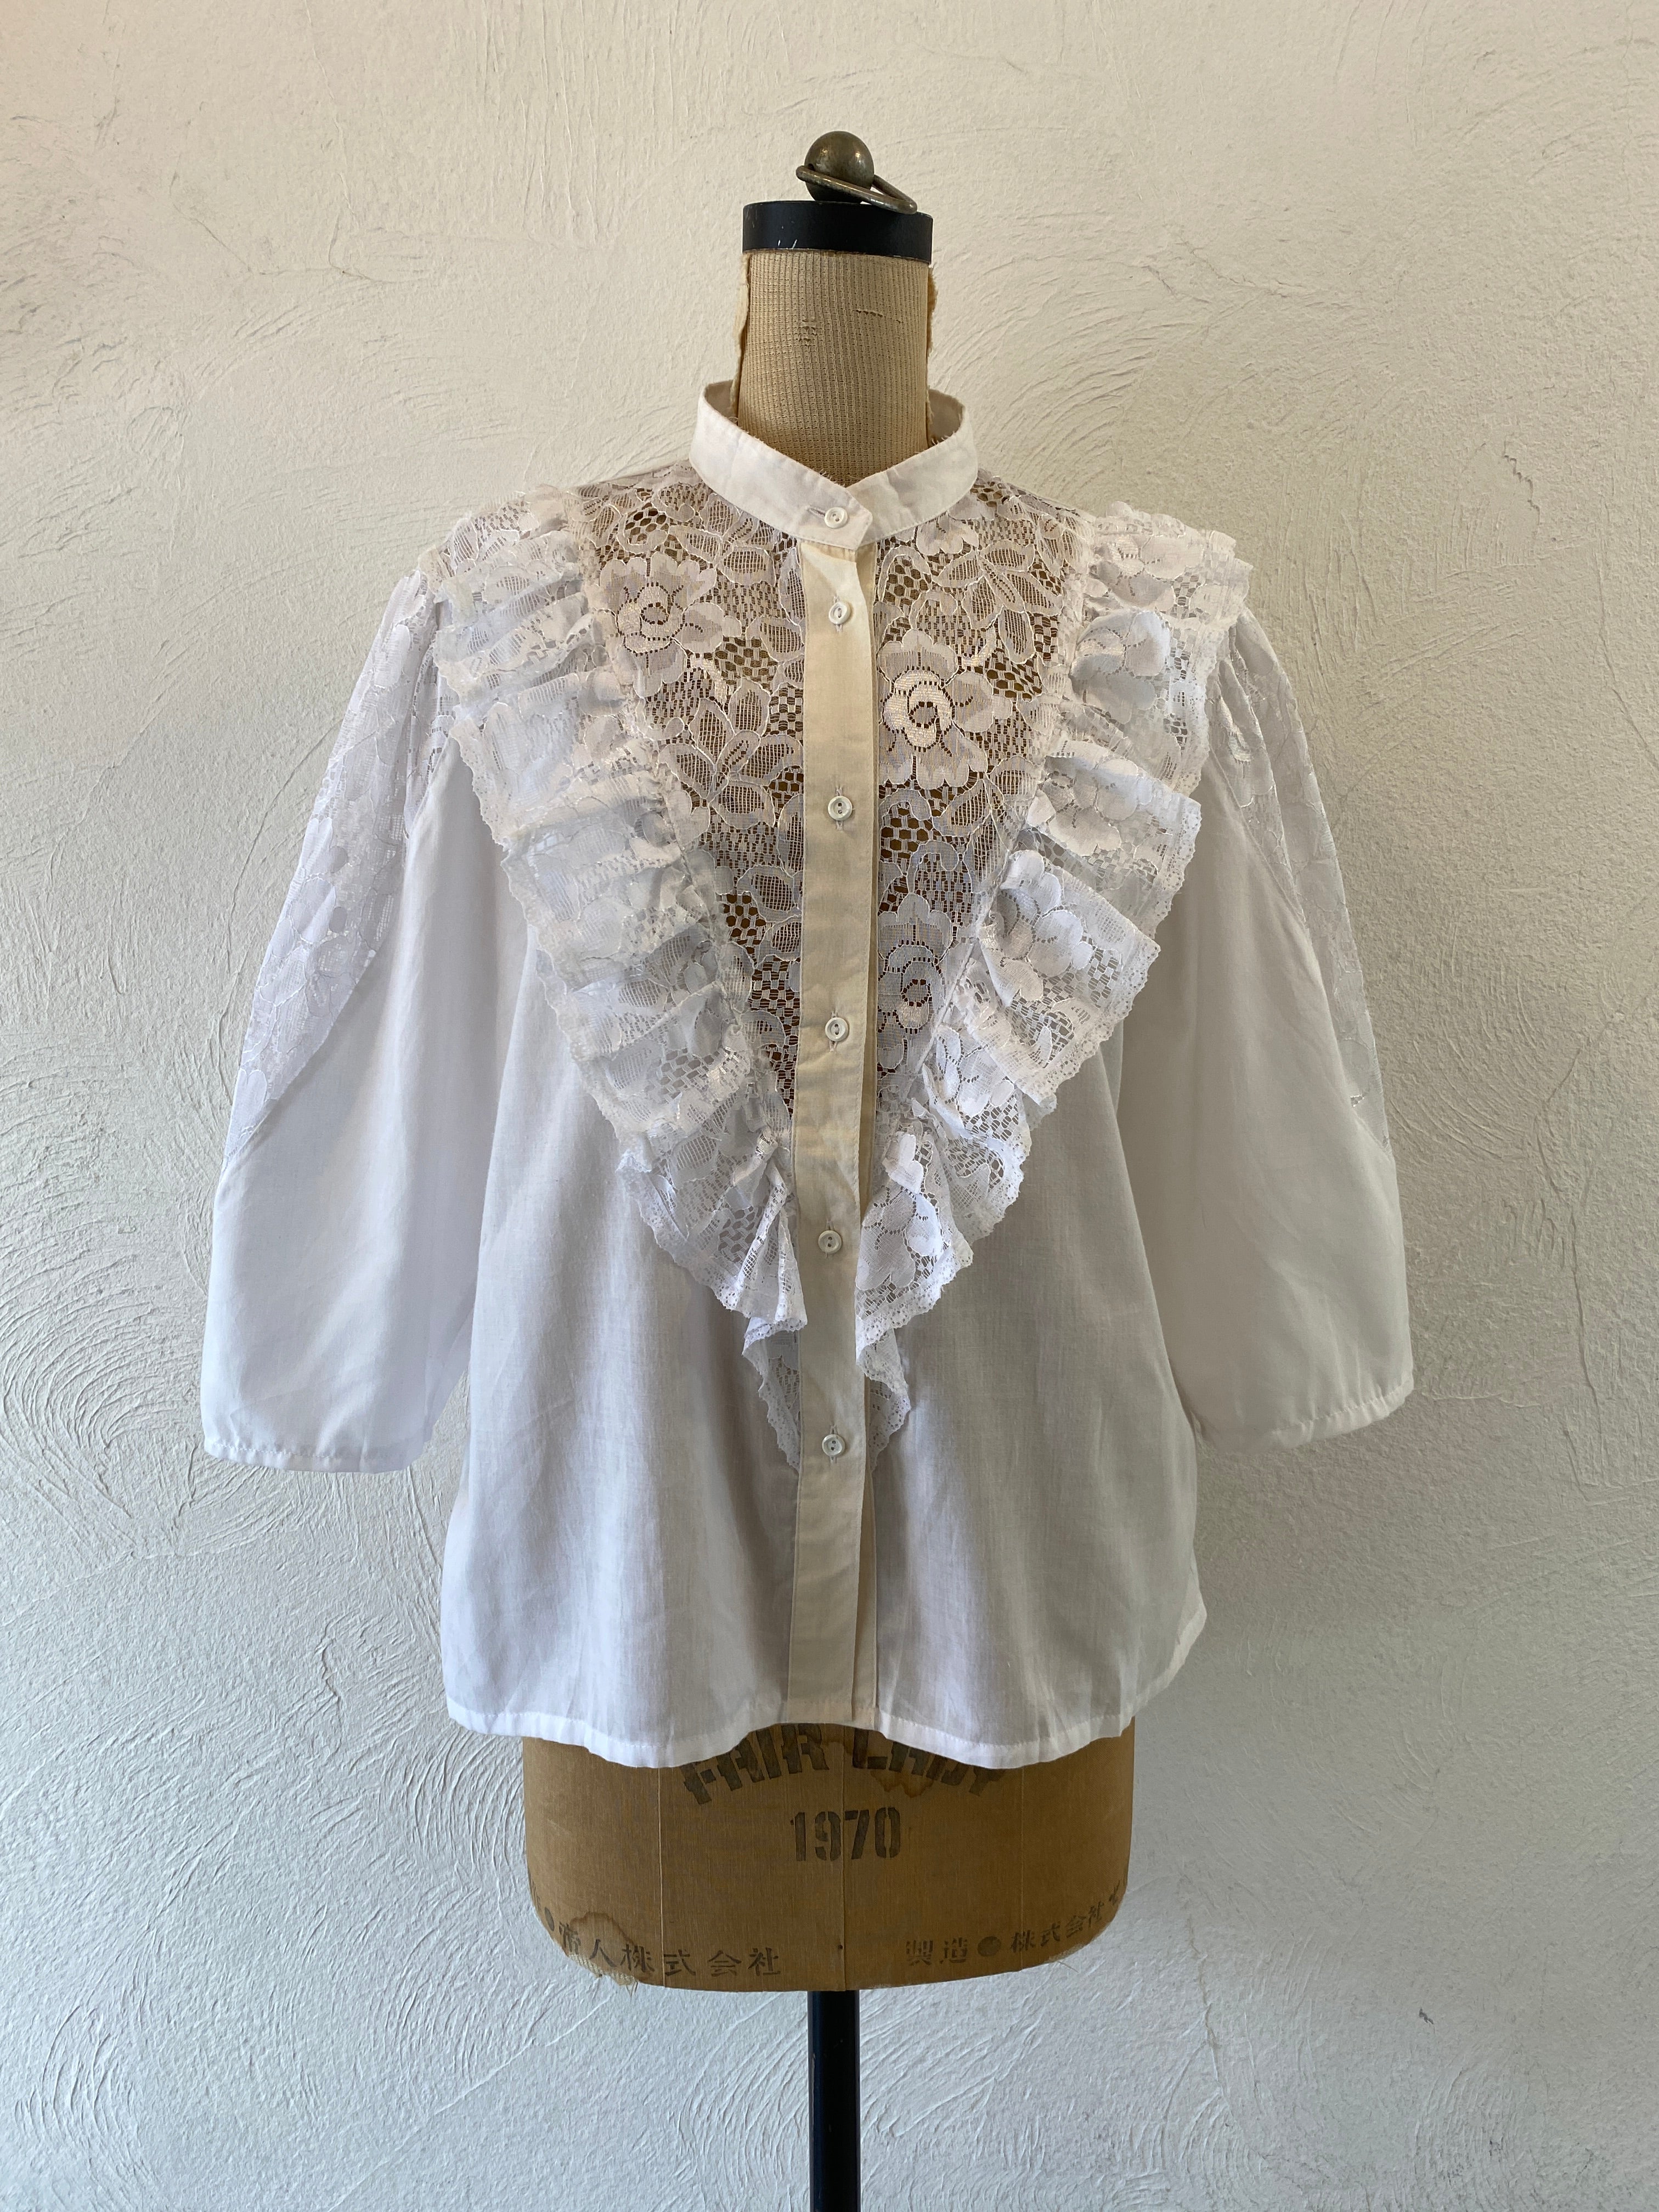 white lace blouse